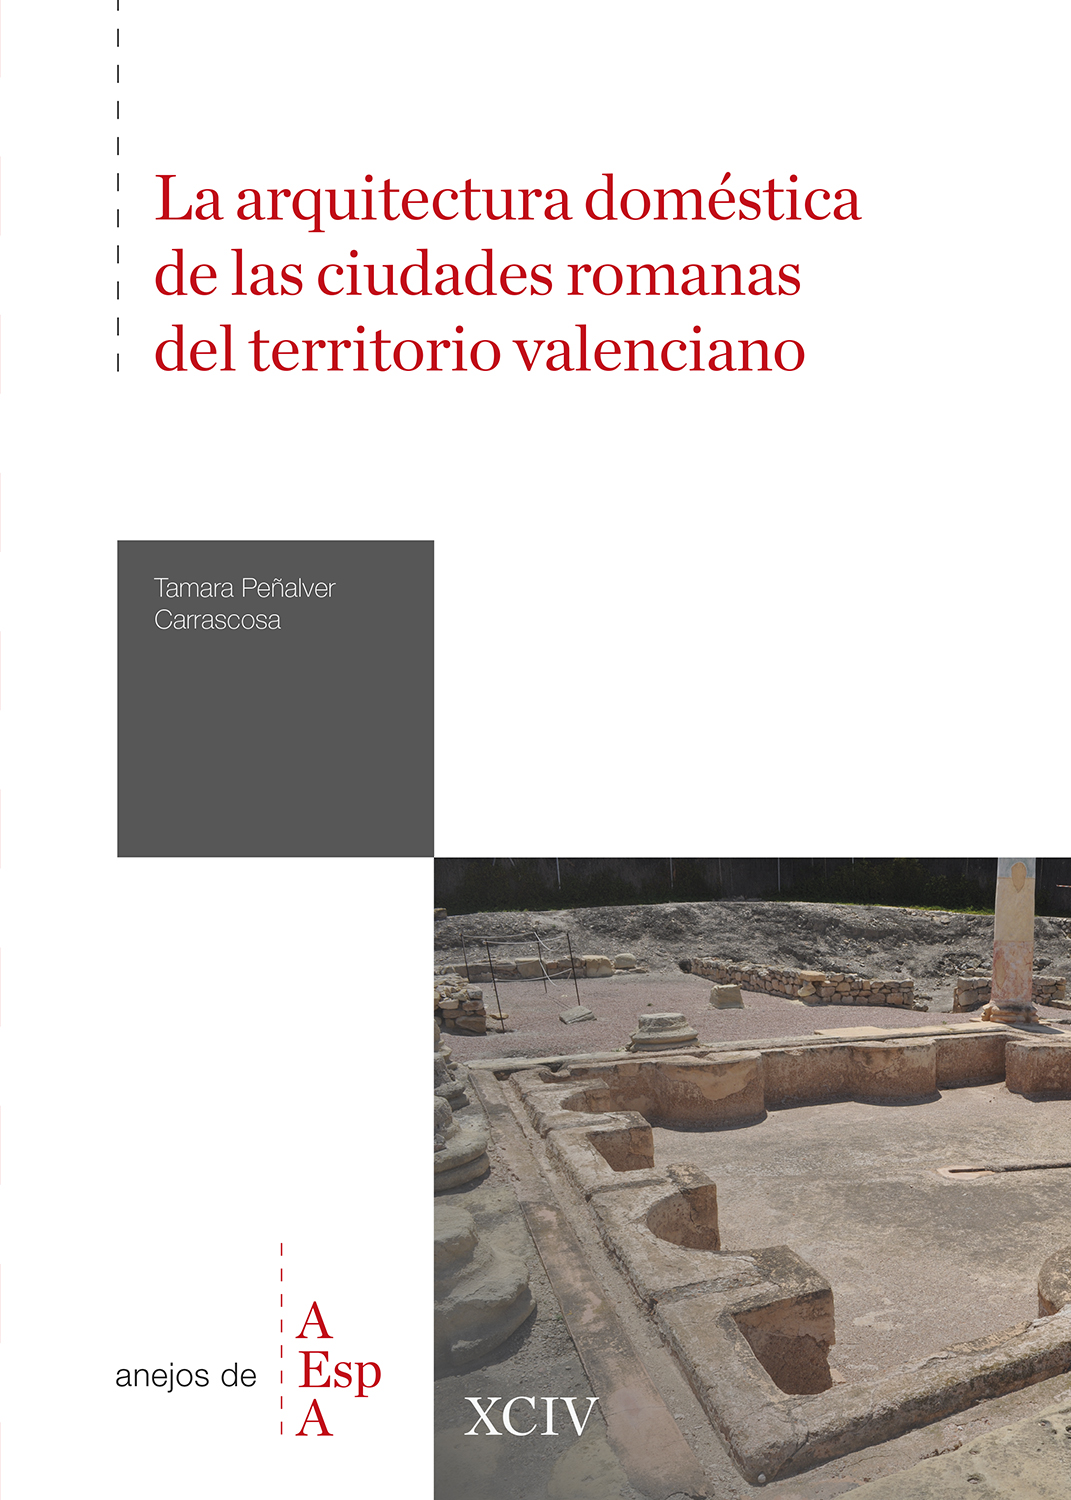 La arquitectura doméstica de las ciudades romanas del territorio valenciano. 9788400110895